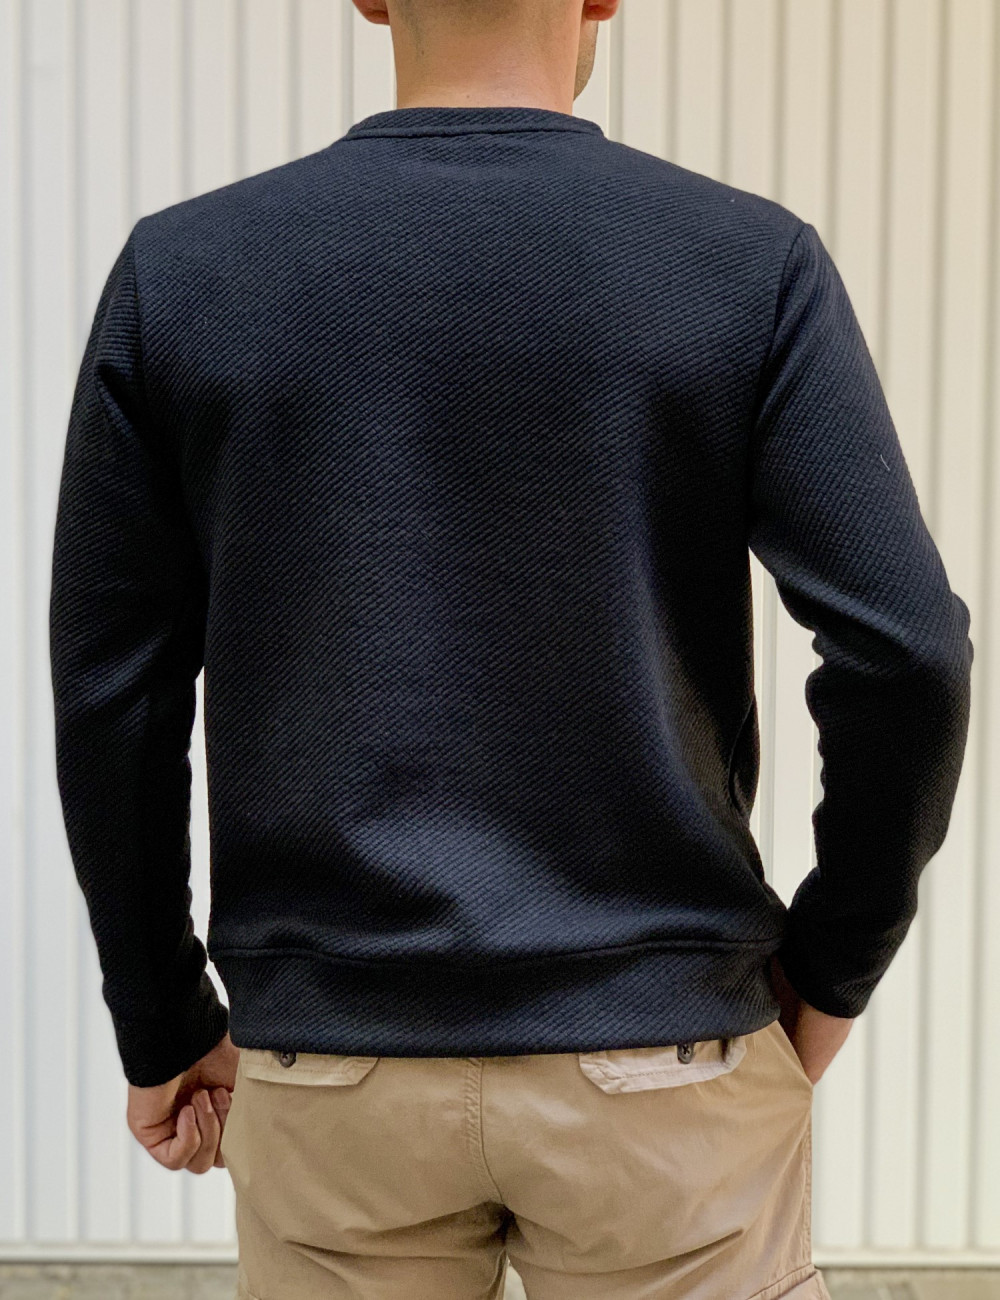 Ανδρική μαύρη μακρυμάνικη μπλούζα με ανάγλυφο σχέδιο MAJE108